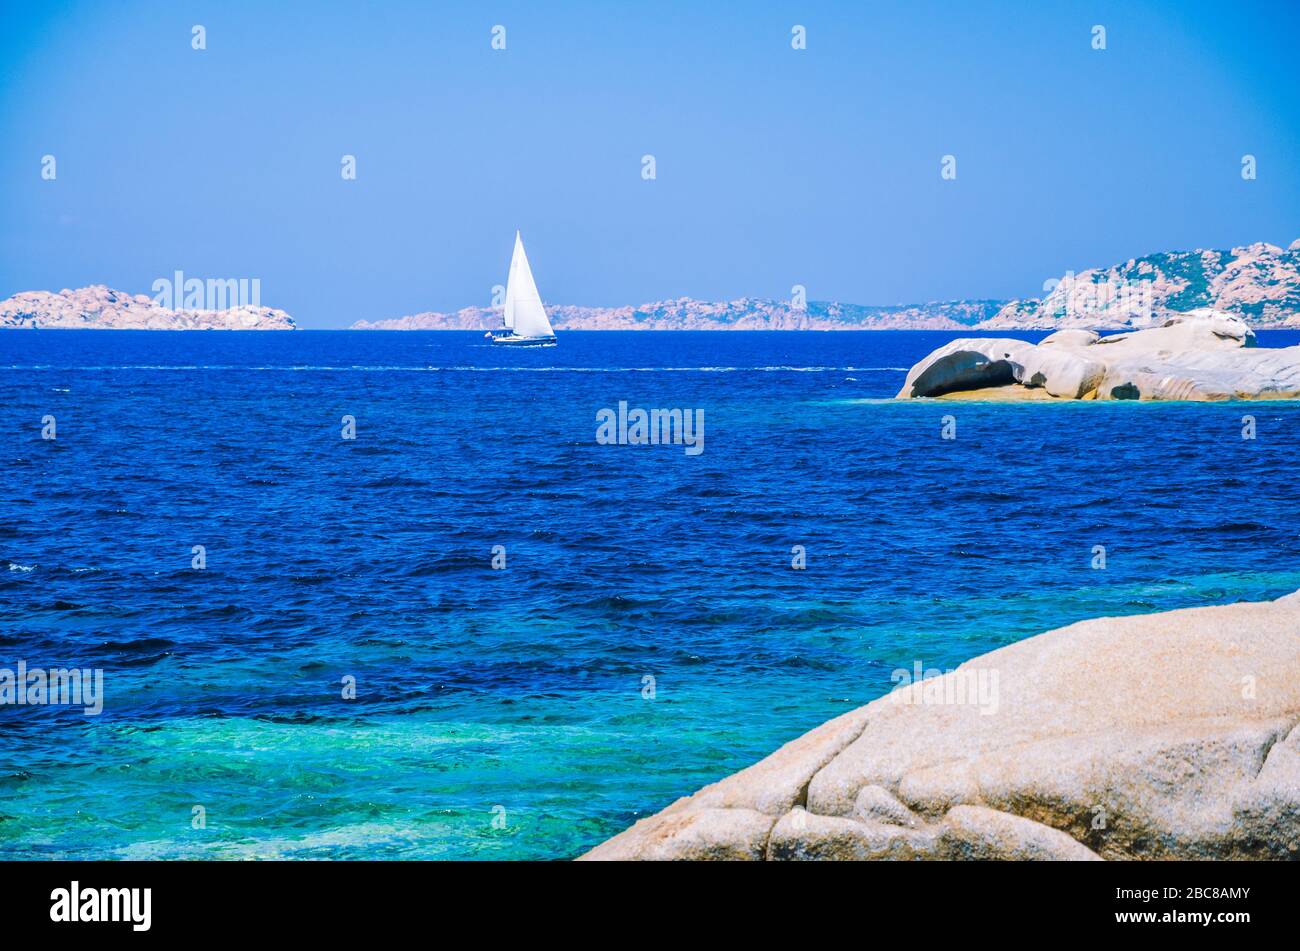 Blanco yate velero, entre rocas de granito en el mar, el agua azul impresionante, Cerdeña, Italia. Foto de stock